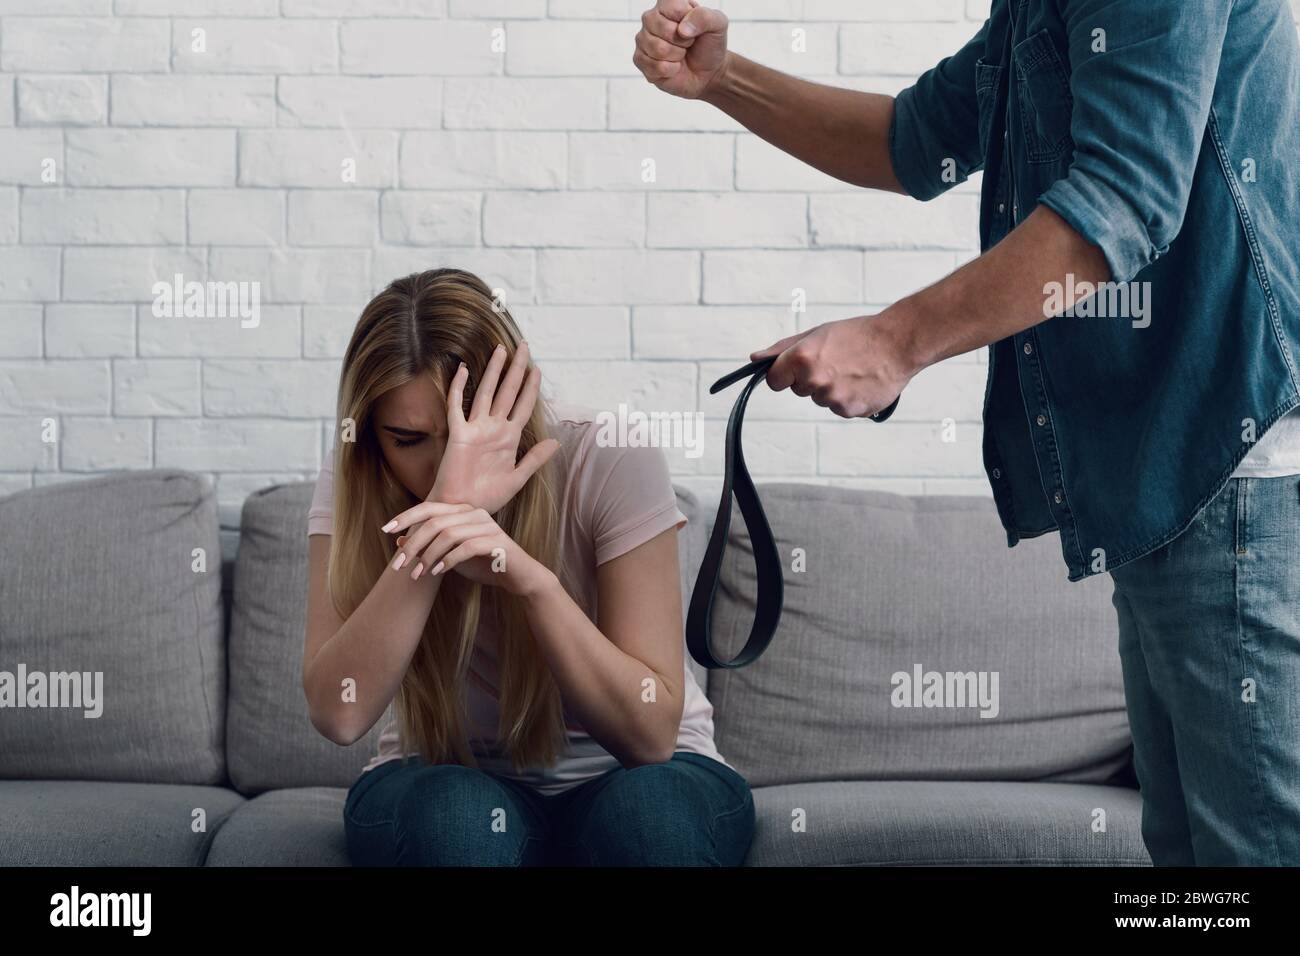 Battere e umiliazione. L'uomo minaccia con pugno alla donna, chiude il viso con le mani Foto Stock